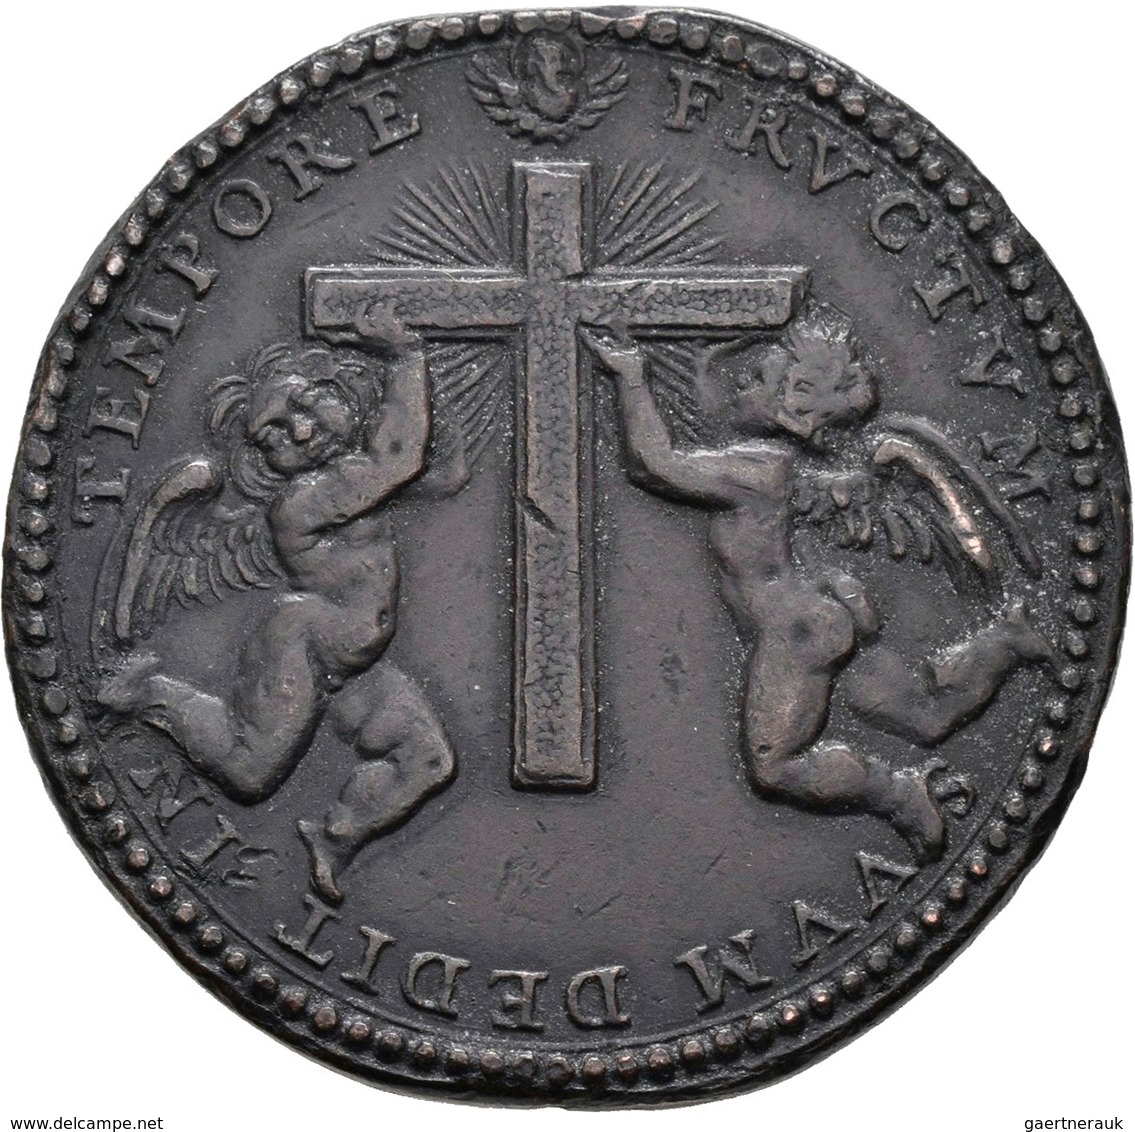 Medaillen alle Welt: Italien-Kirchenstaat: Lot 7 Medaillen; Innocenz X. 1644-1655: Bronzemedaille AN